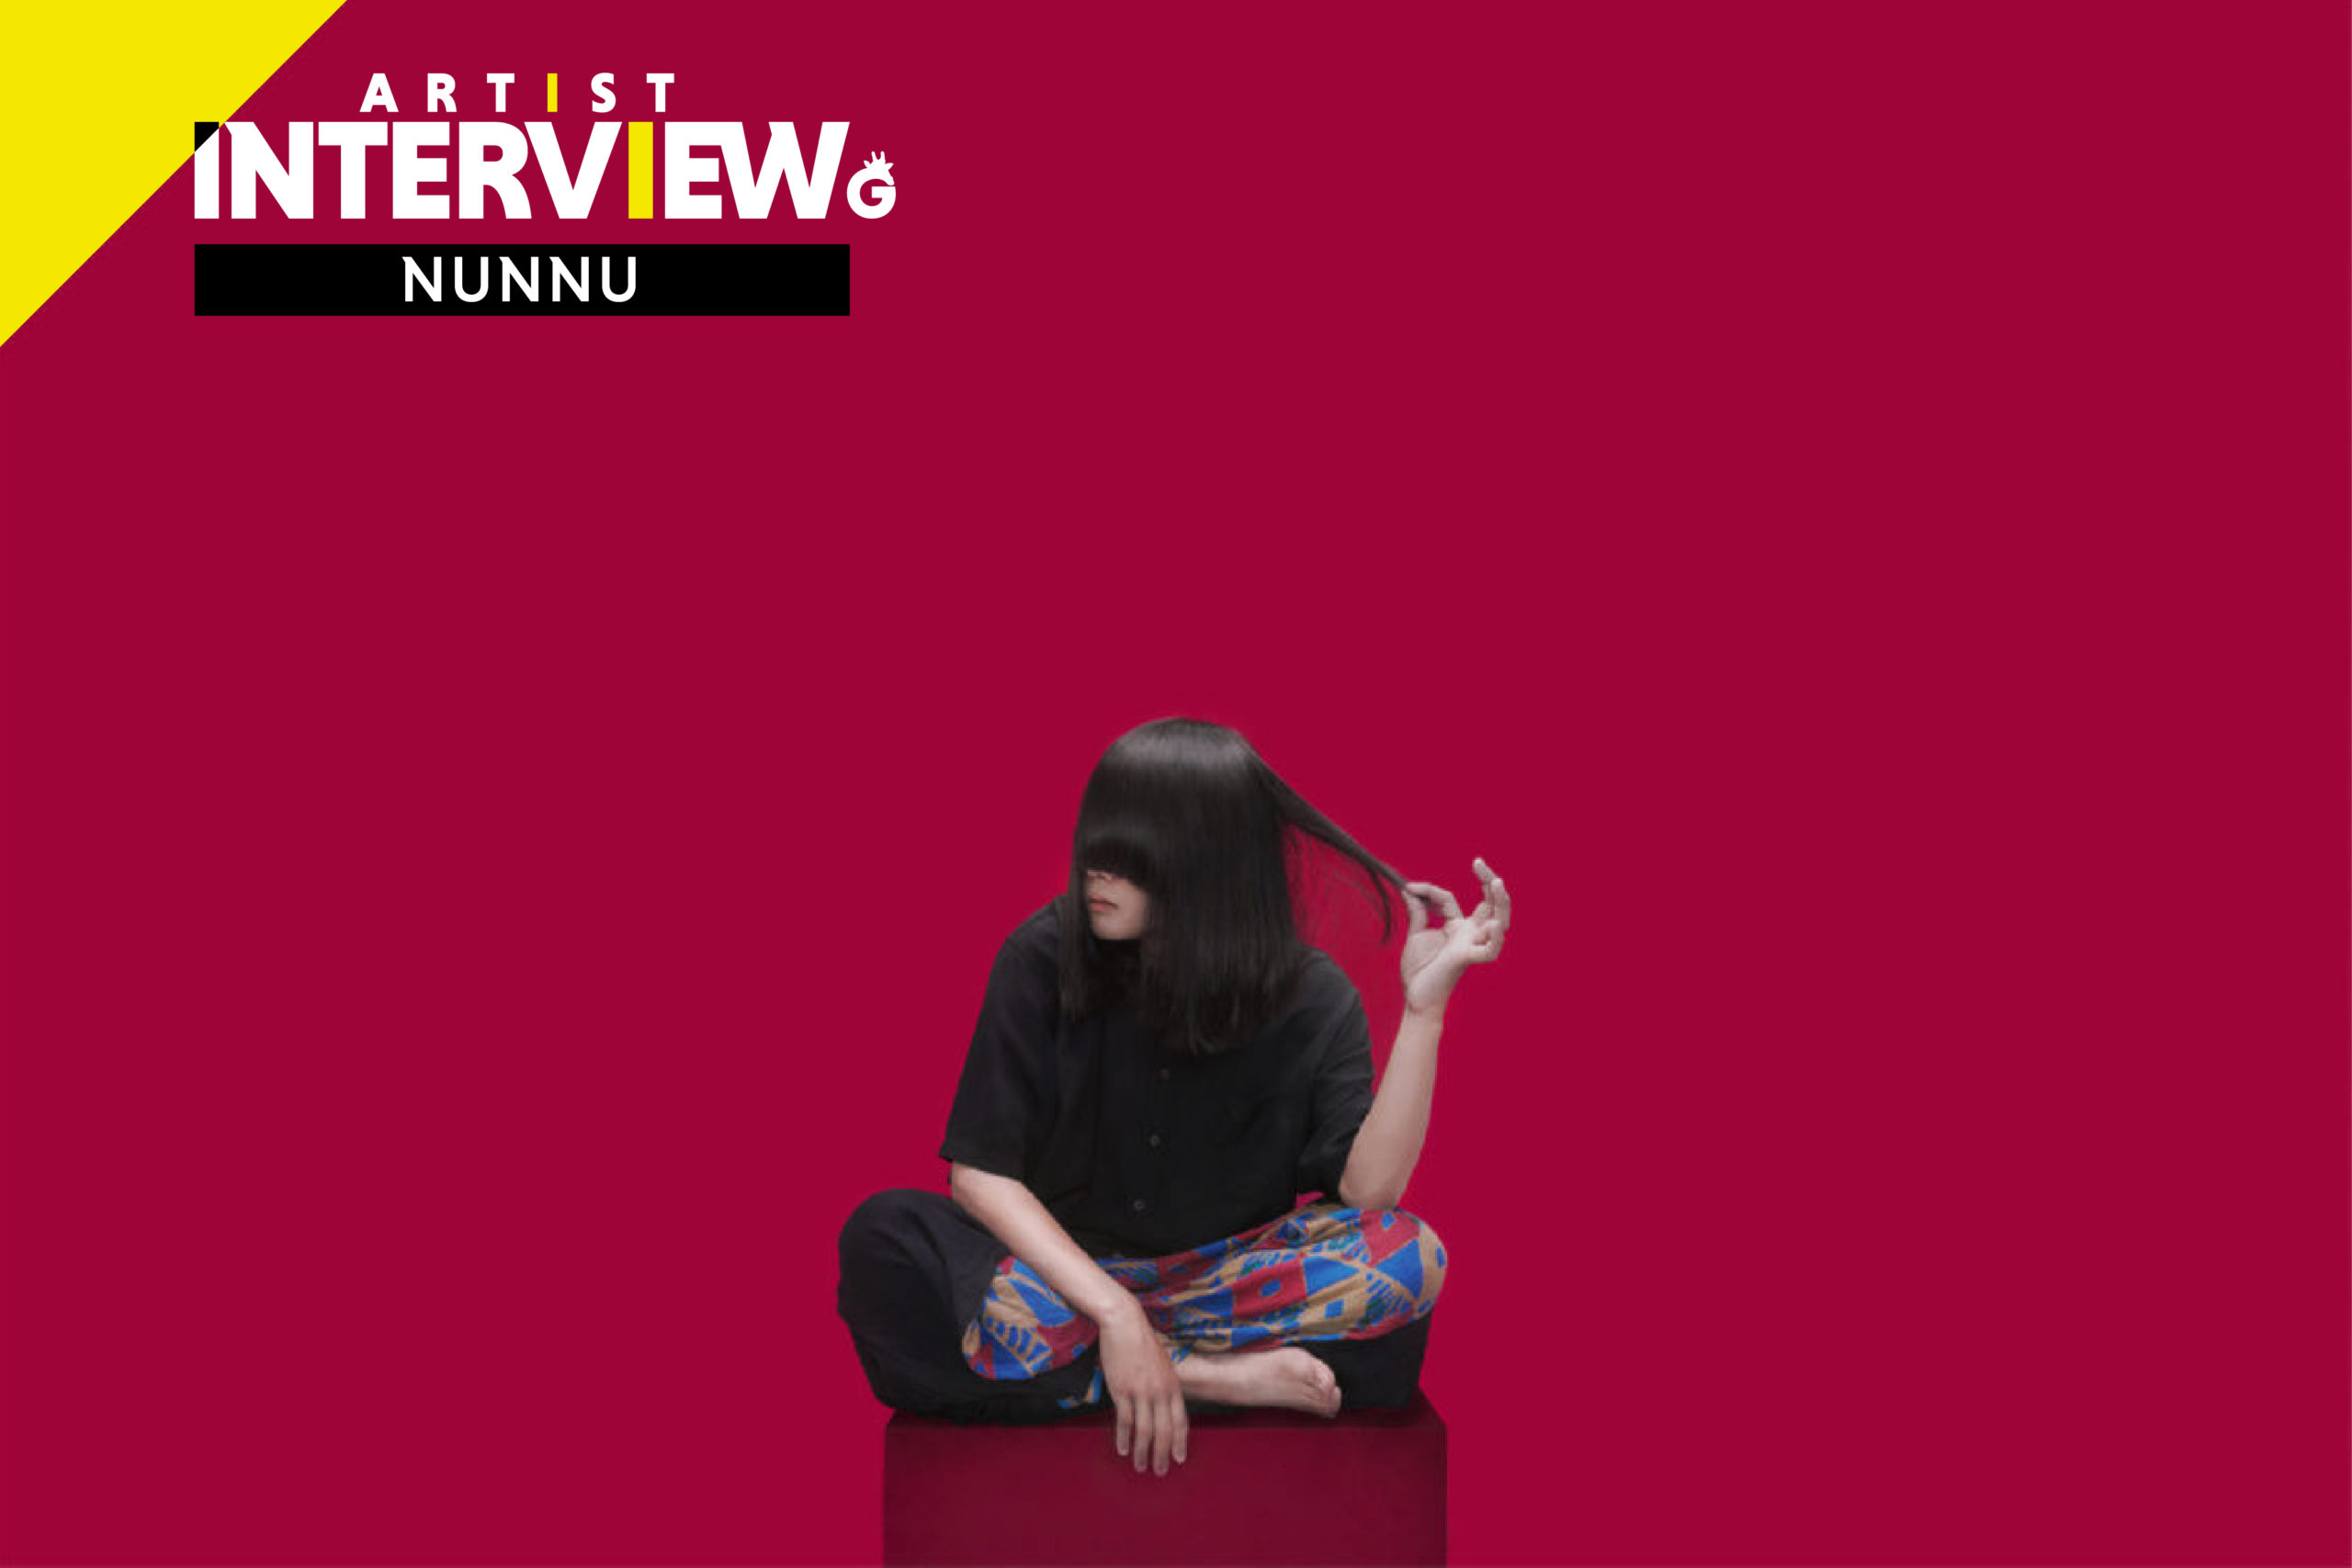 「【NUNNU 独占ロングインタビュー】 普遍的なのに言葉にできない感情をすくい上げて歌う、NUNNUの音楽について」のアイキャッチ画像